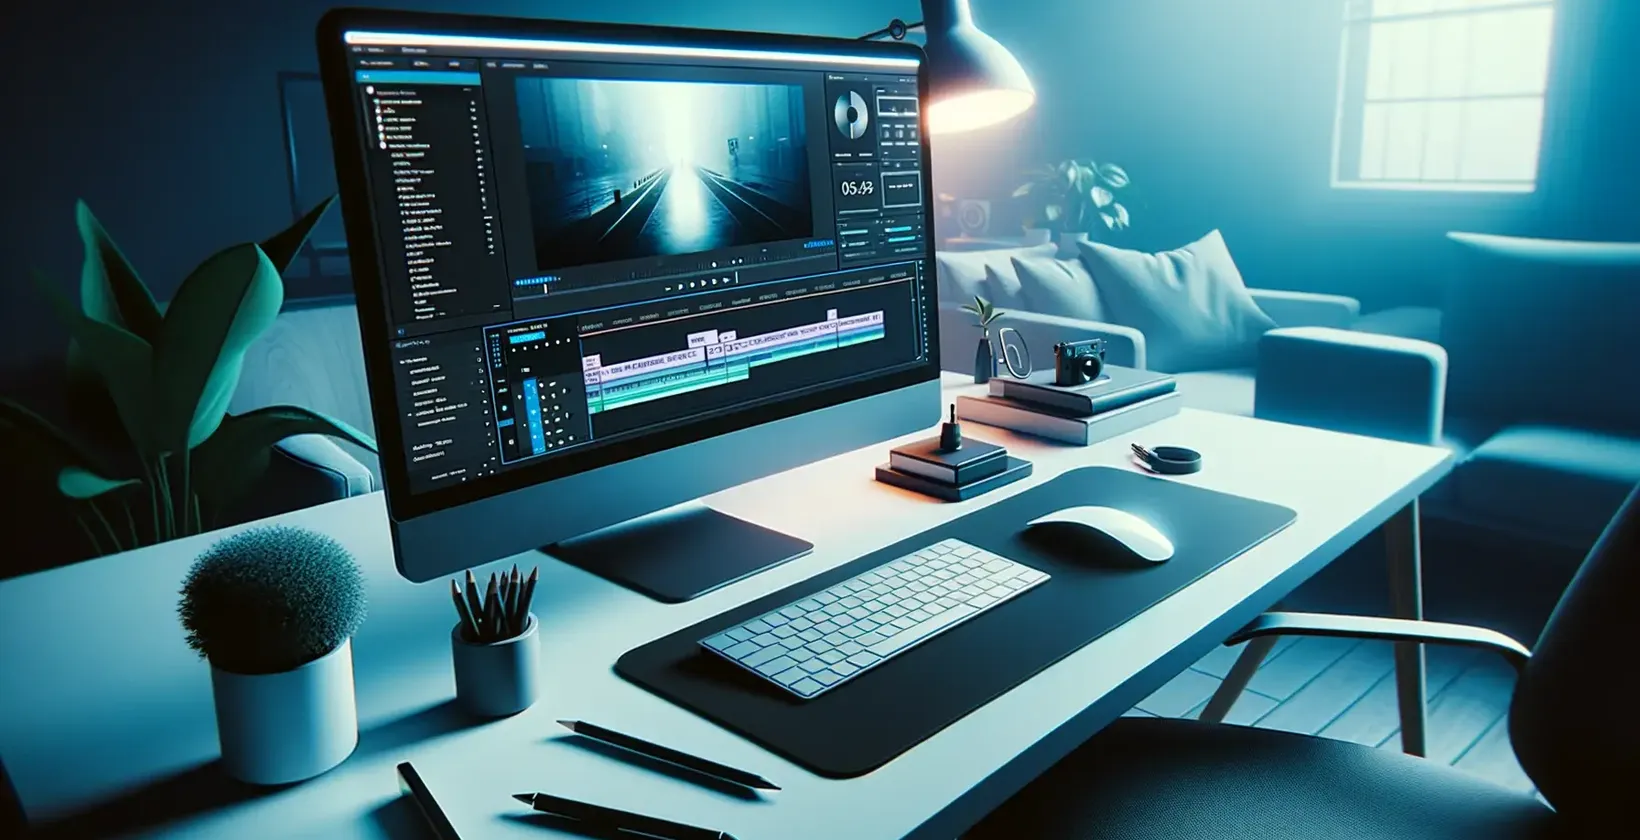 הוספת טקסט לווידאו עם Adobe After Effects המאויר על-ידי סביבת עבודה מלוטשת של עריכה עם אור כחול